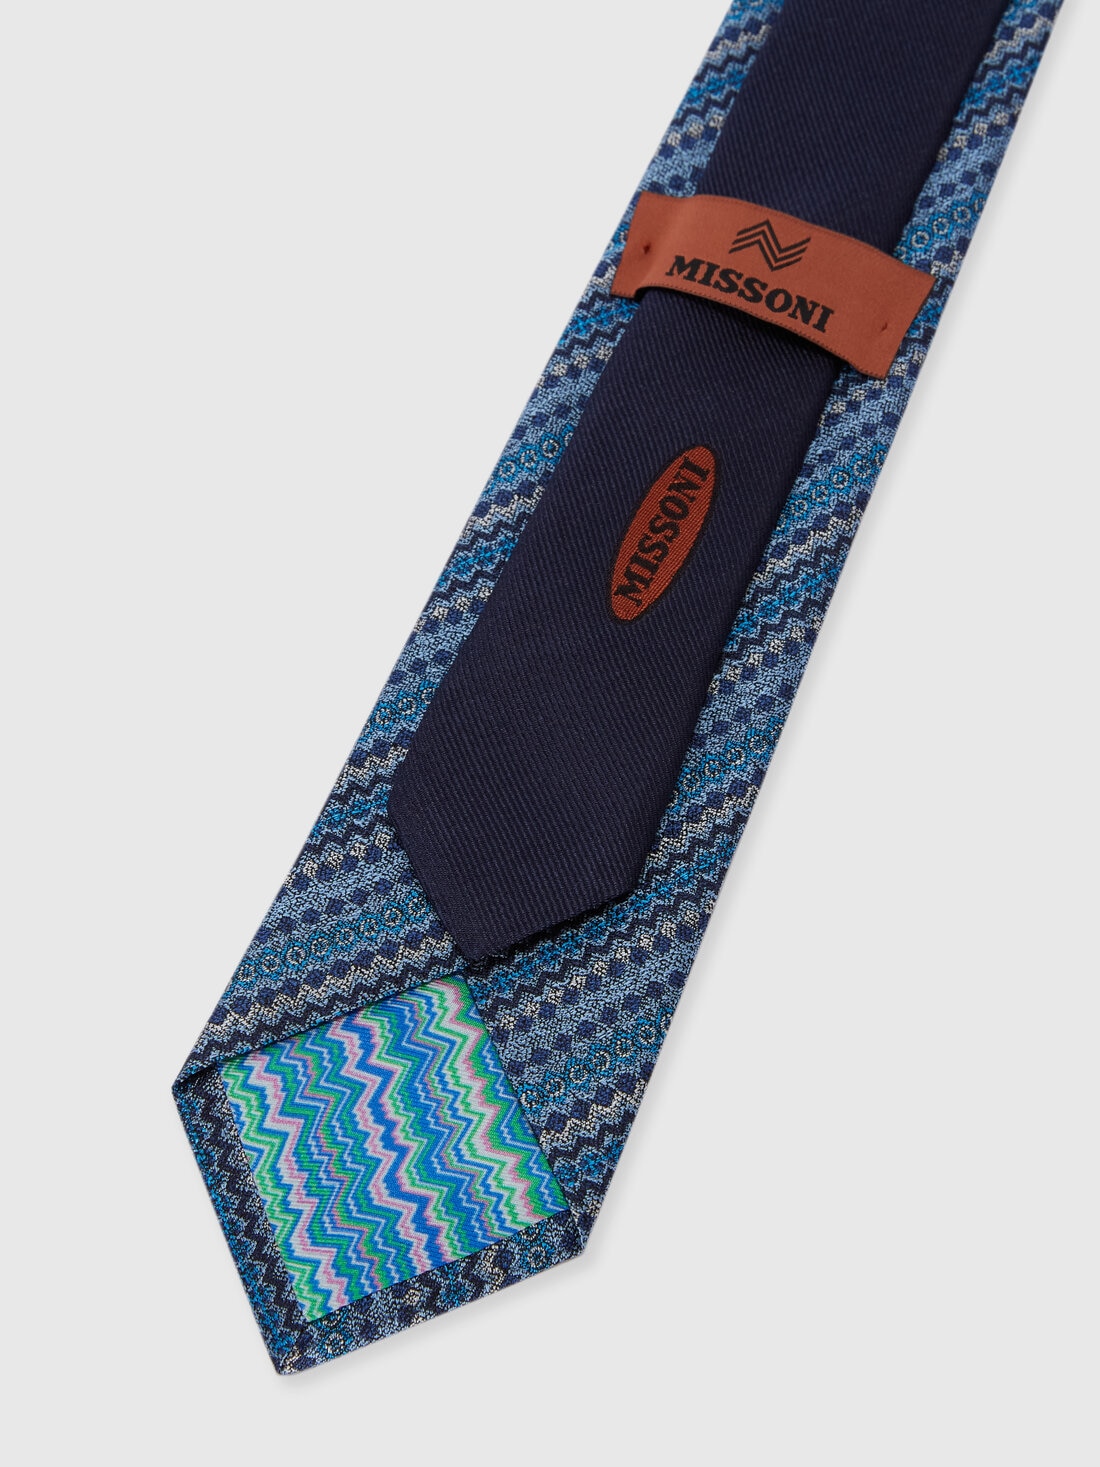 Cravatta in seta multilavorata , Multicolore  - 8053147141893 - 2